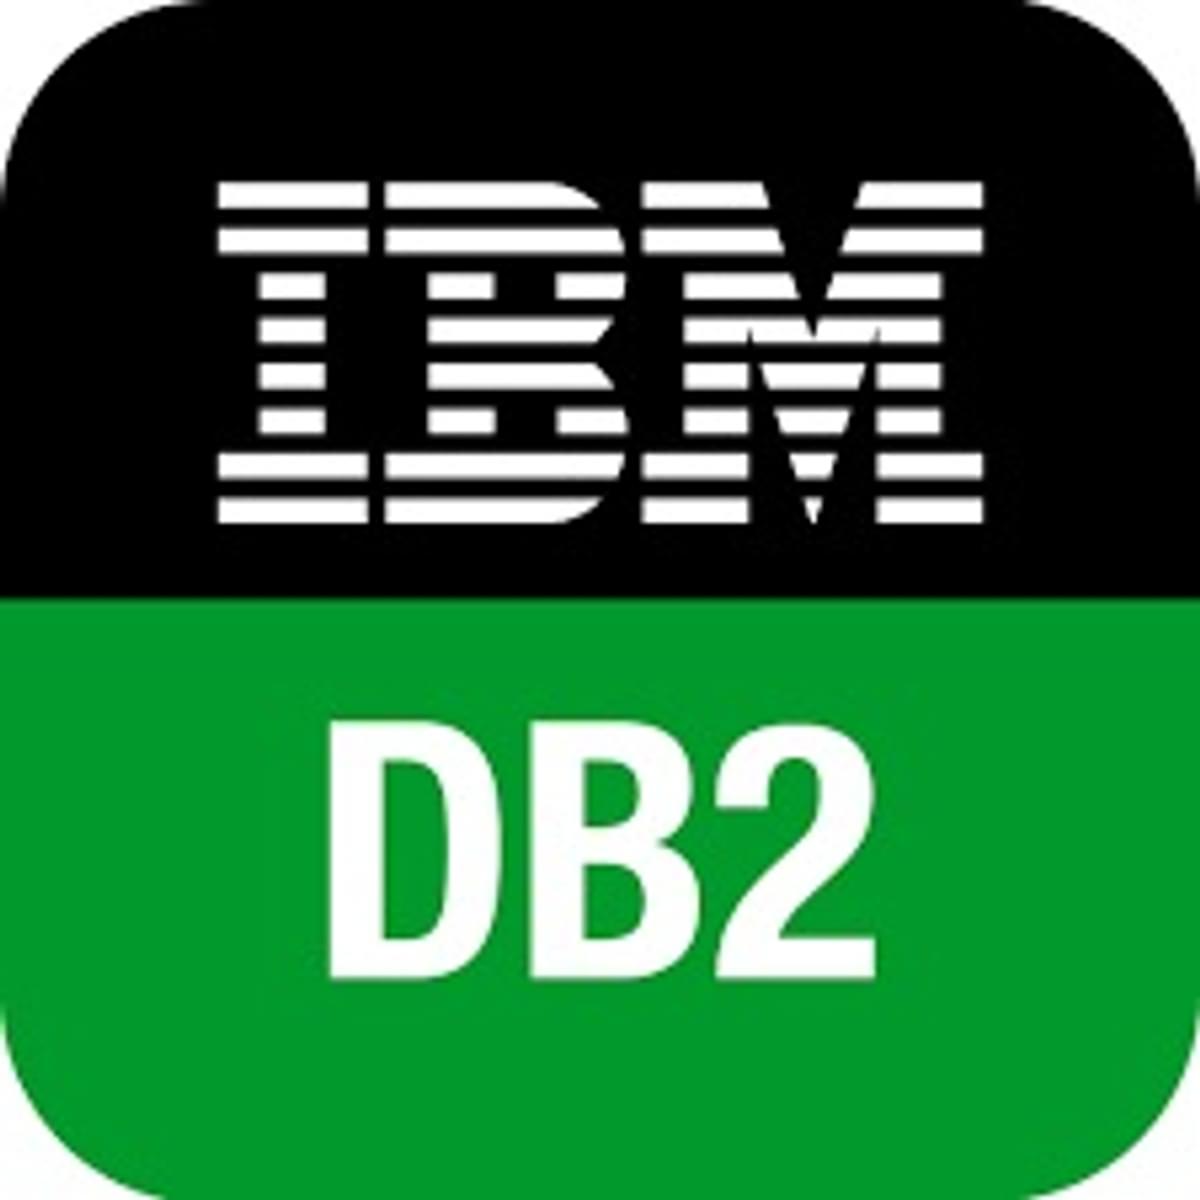 IBM nestelt meer AI in Db2 database image